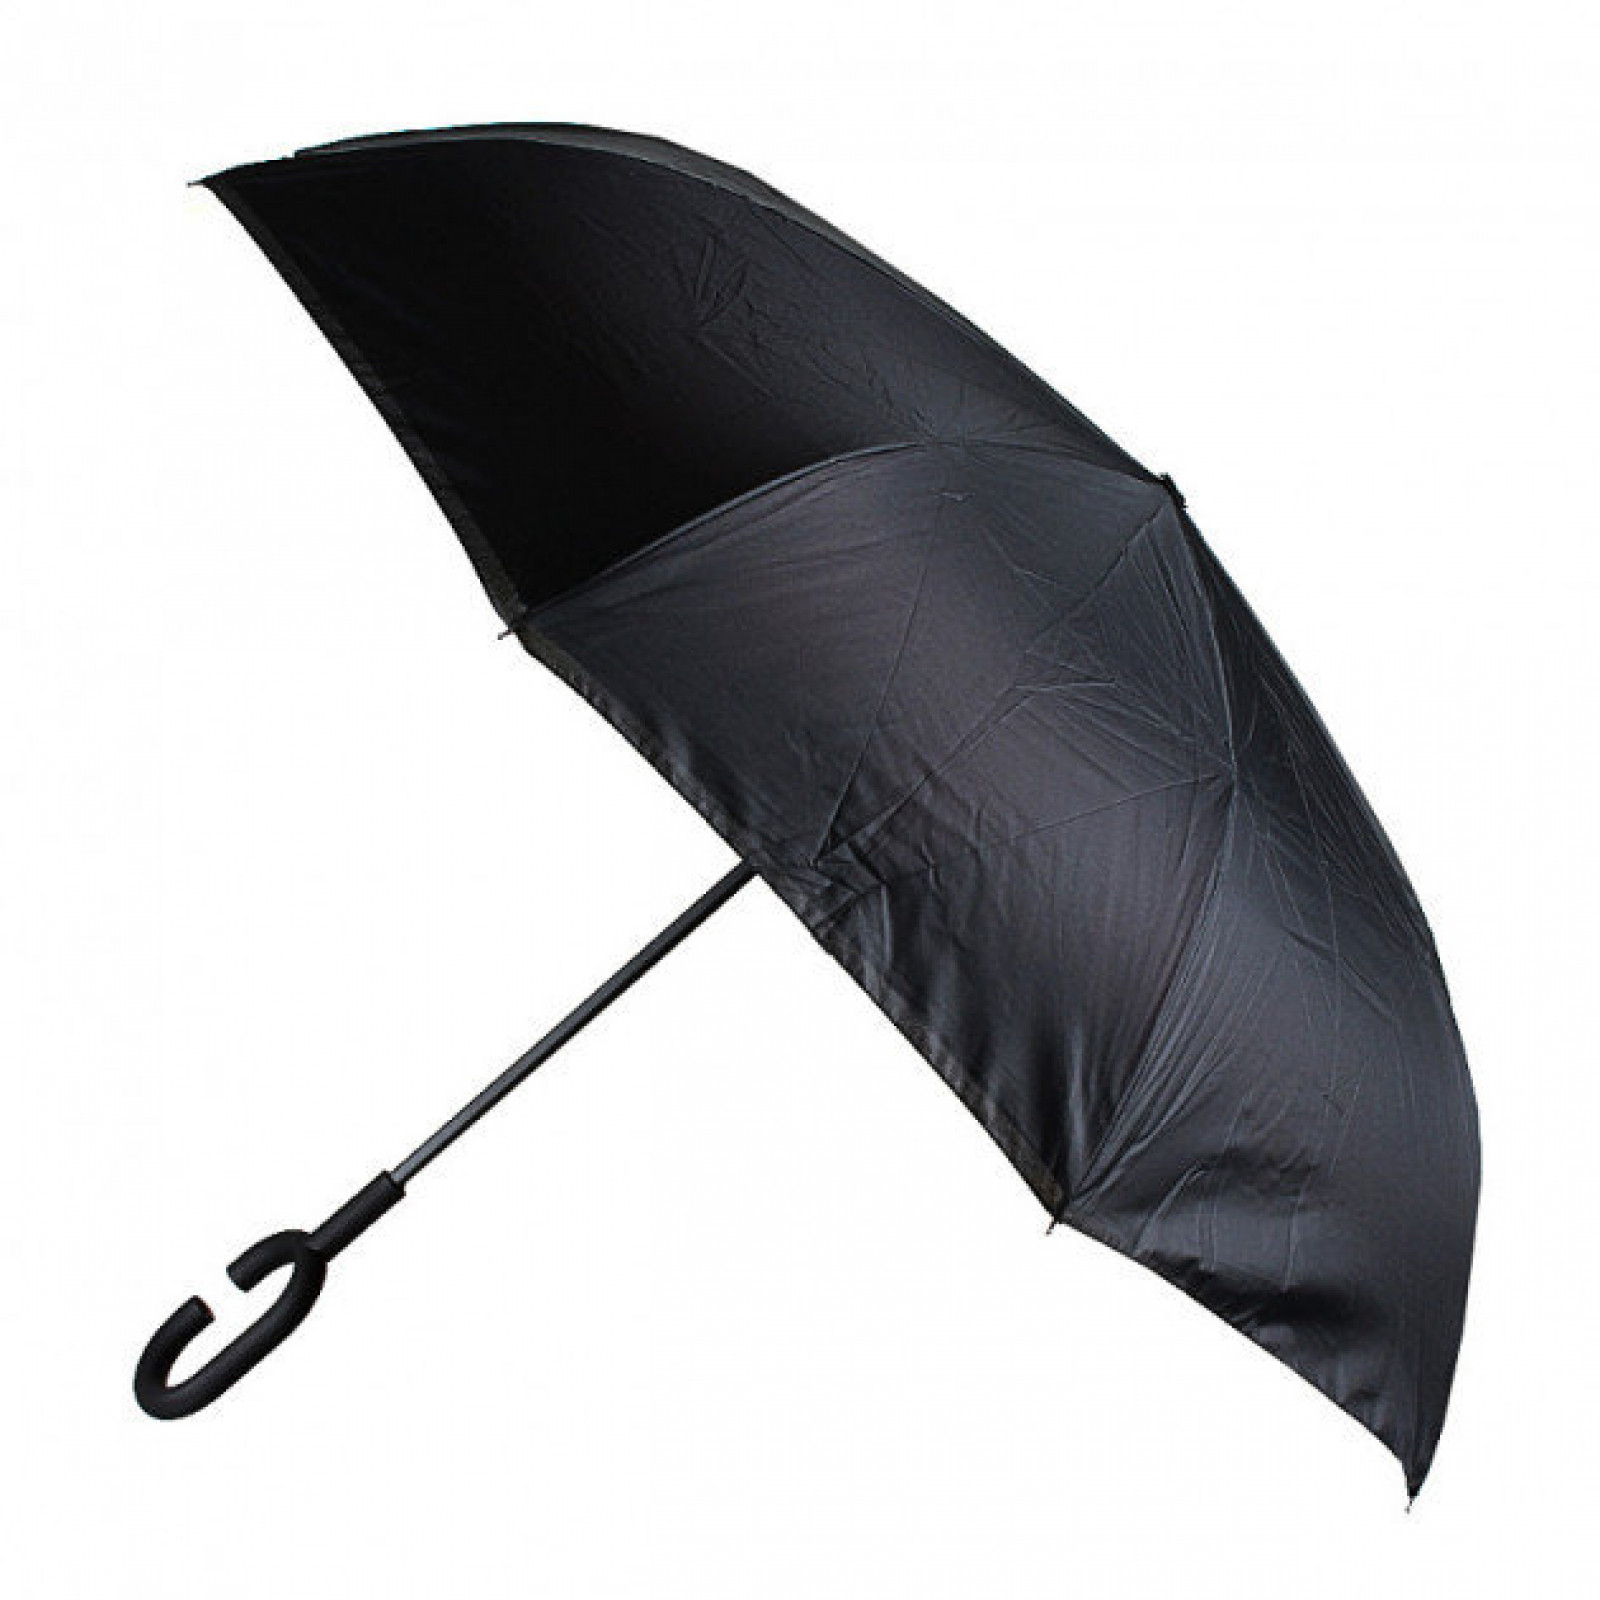 Зонт обратного сложения, антизонт, умный зонт, зонт наоборот Up Brella Узор-Фиолетовый 154101